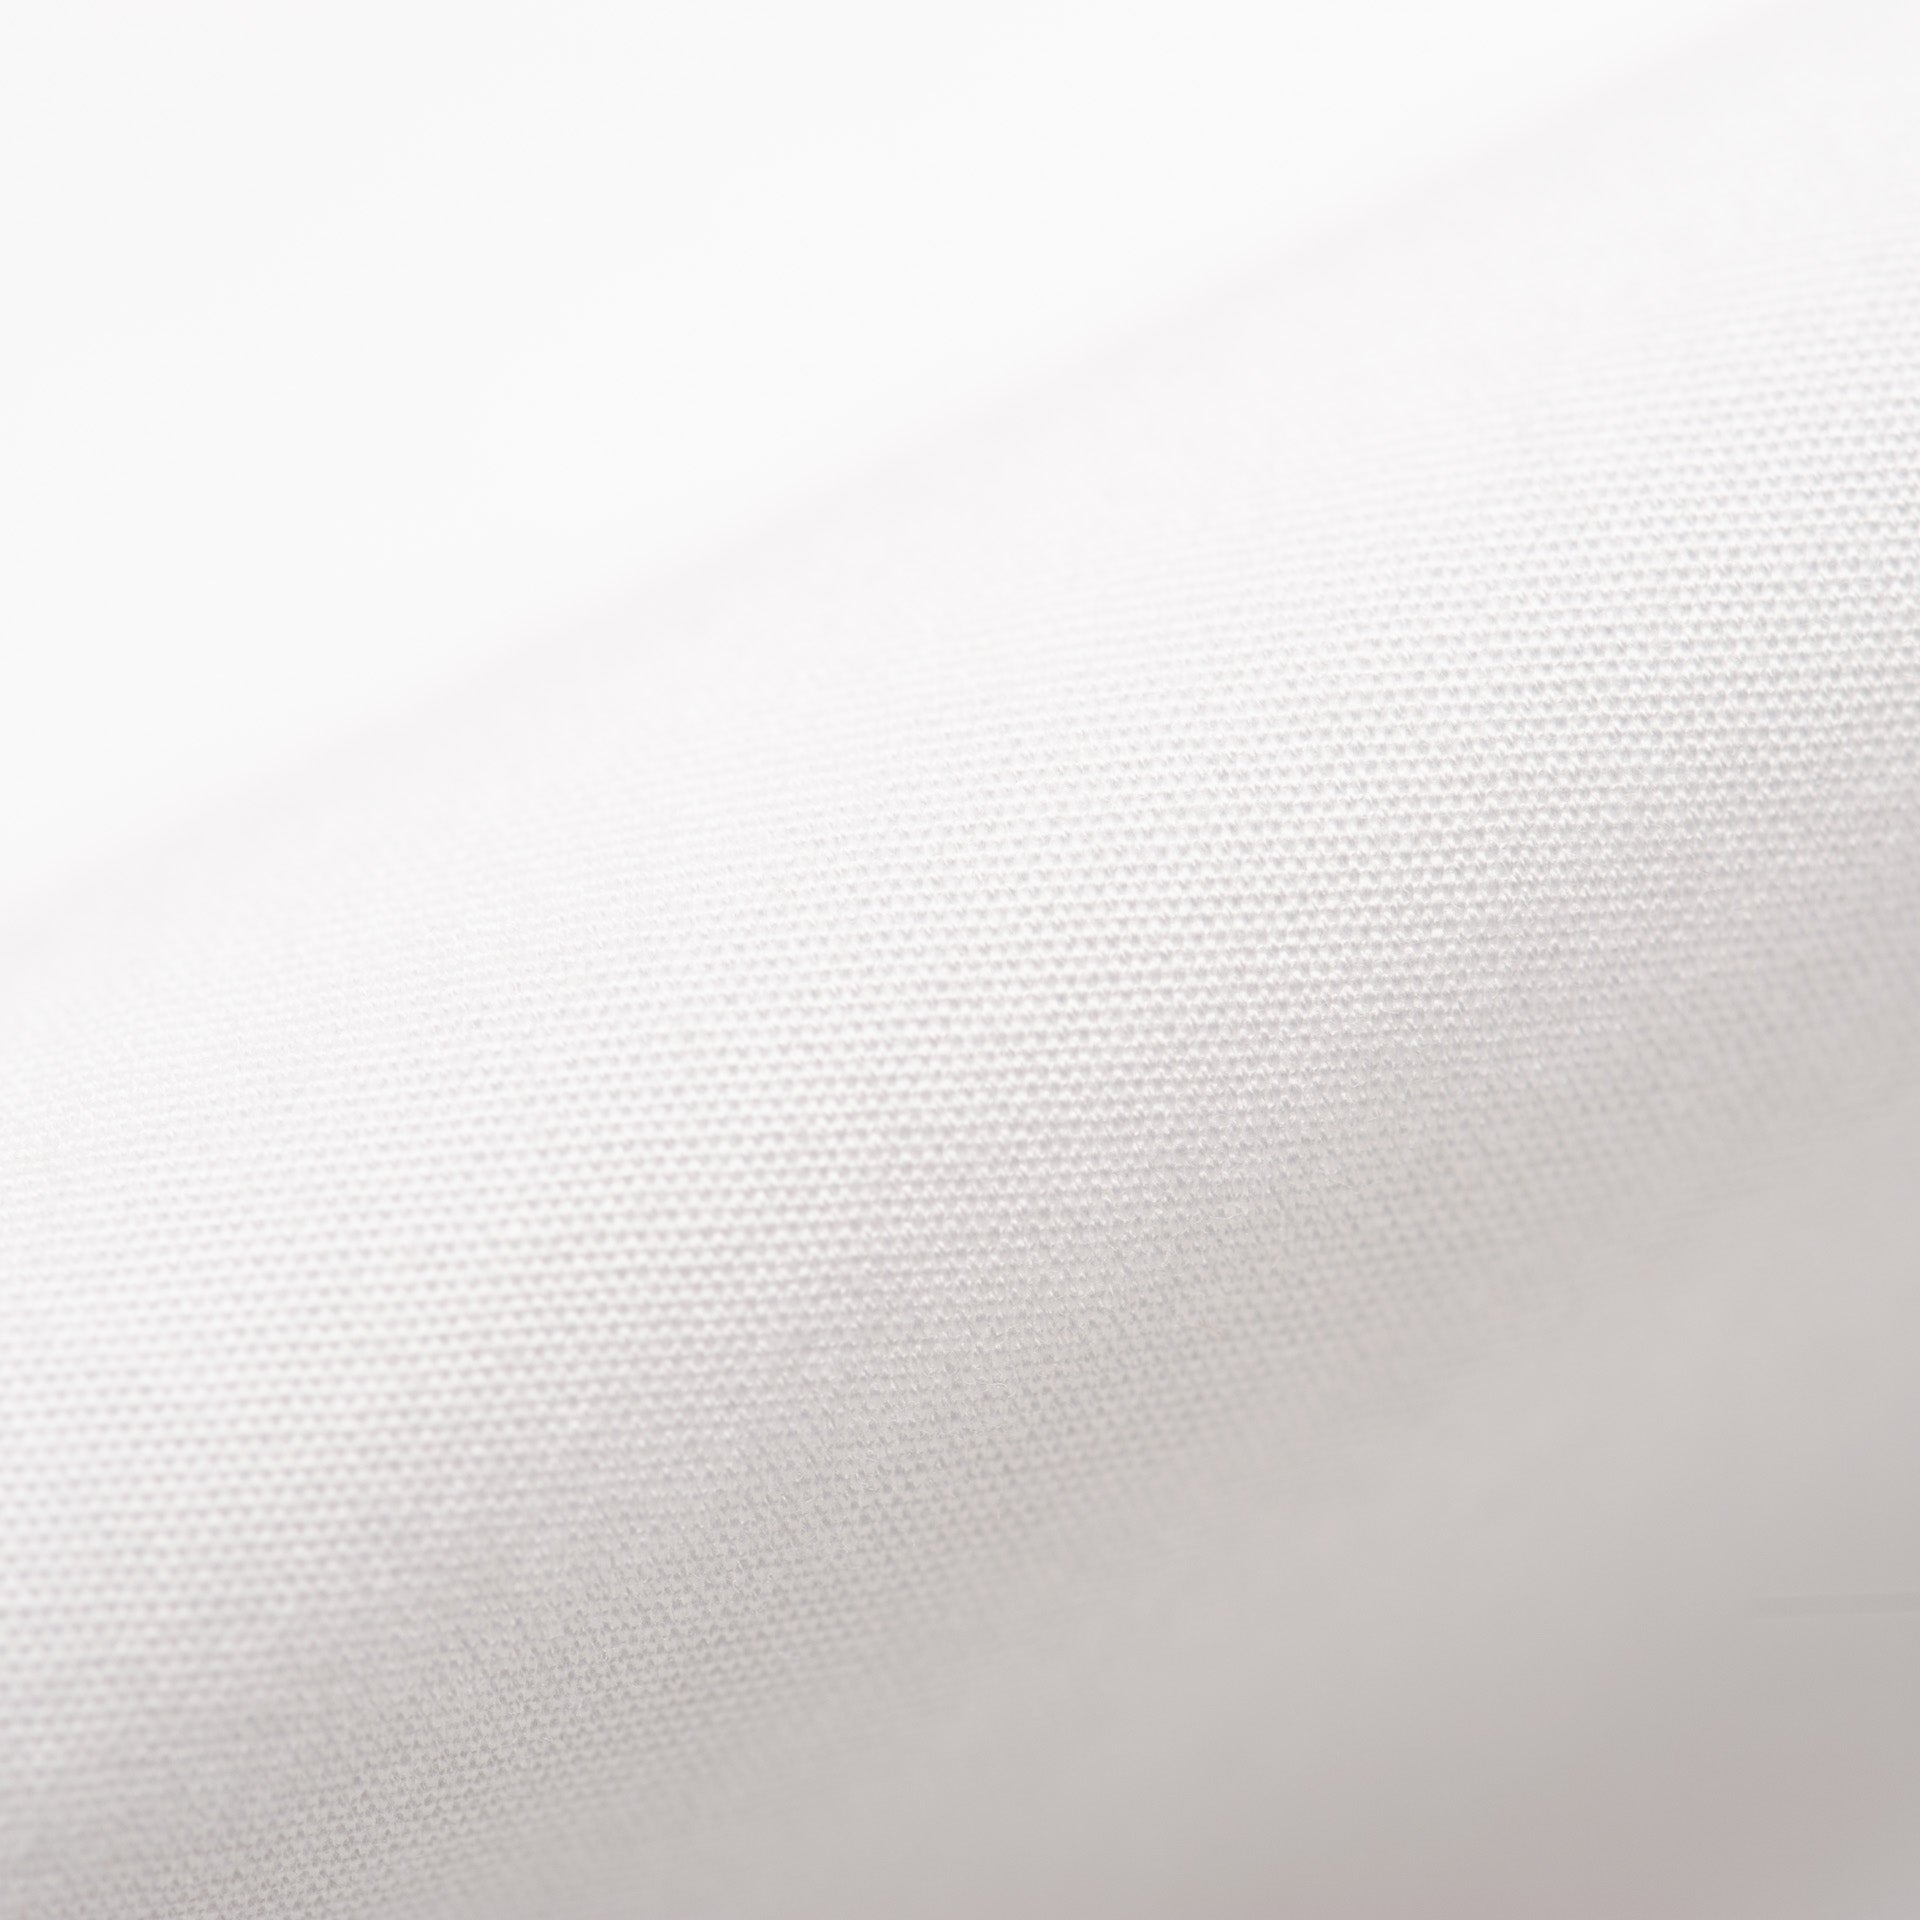 BEAMS PLUS Japan White Poplin Cotton Button-Down Shirt US L Slim BEAMS